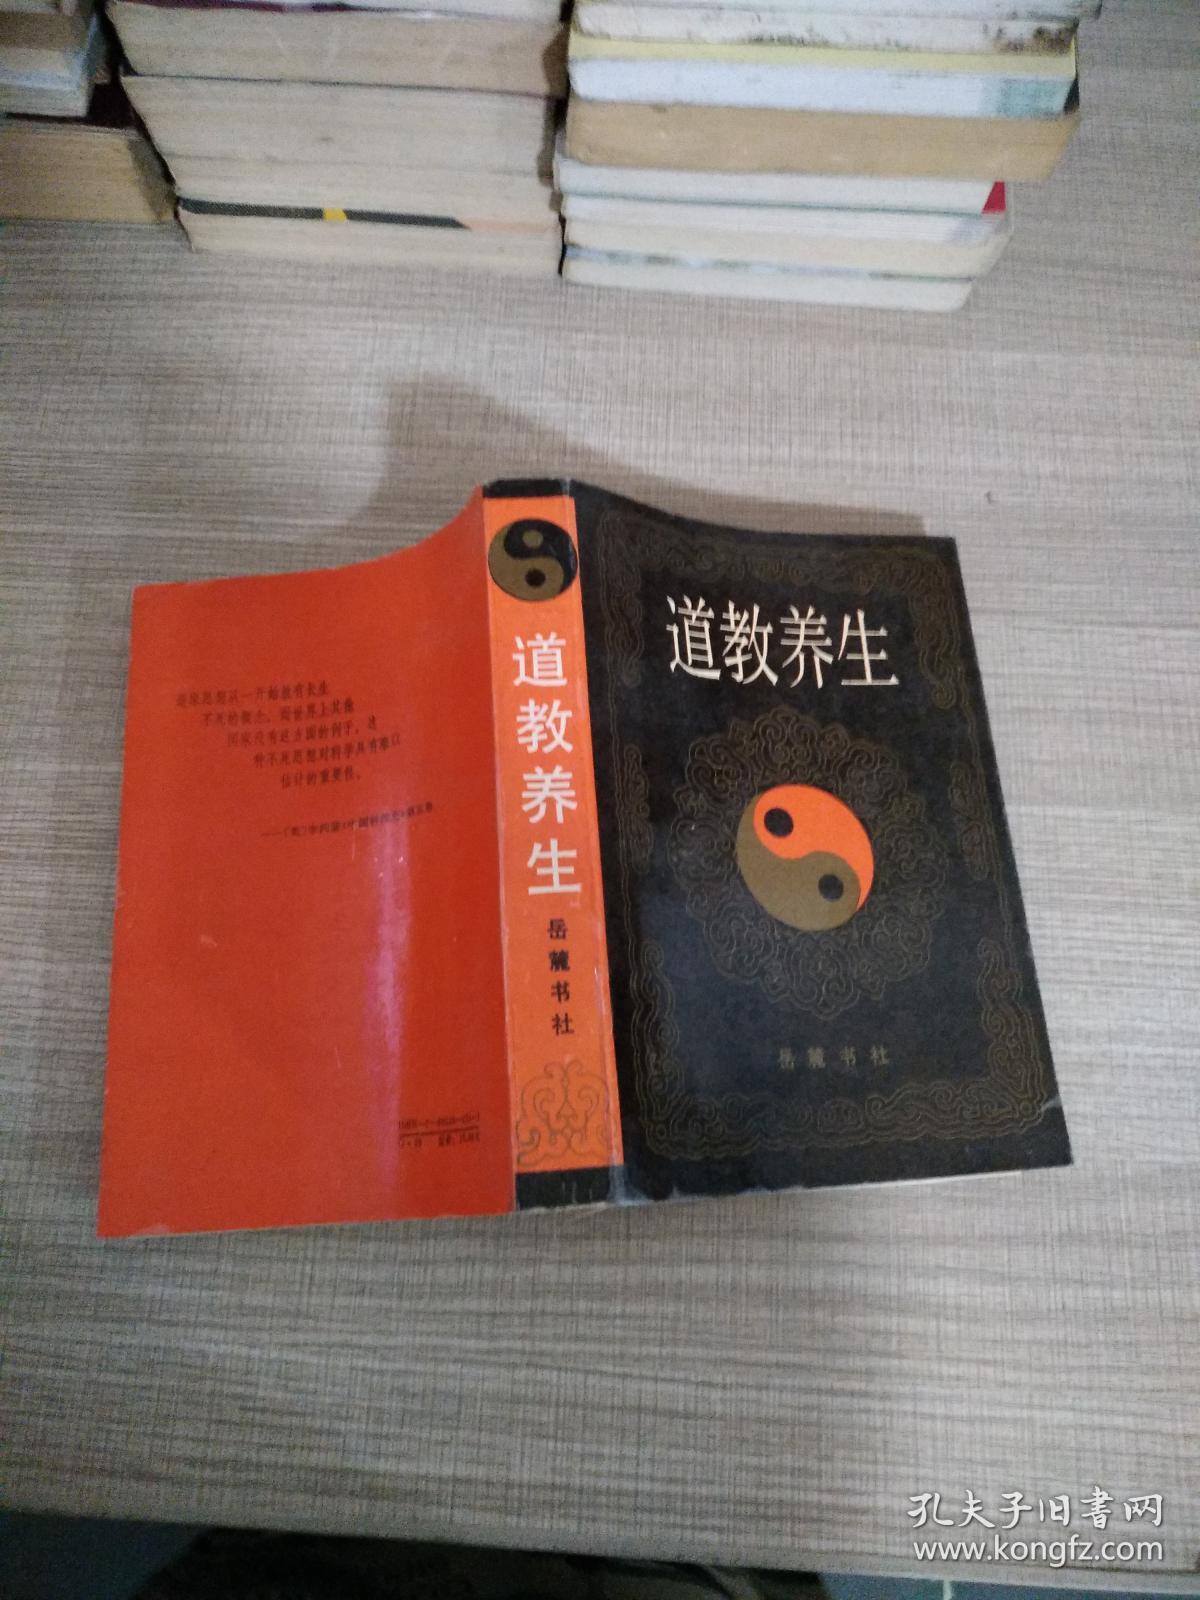 中国传统道家养生文化经典pdf_道家养生文化的哲学基础是什么_道家养生哲学